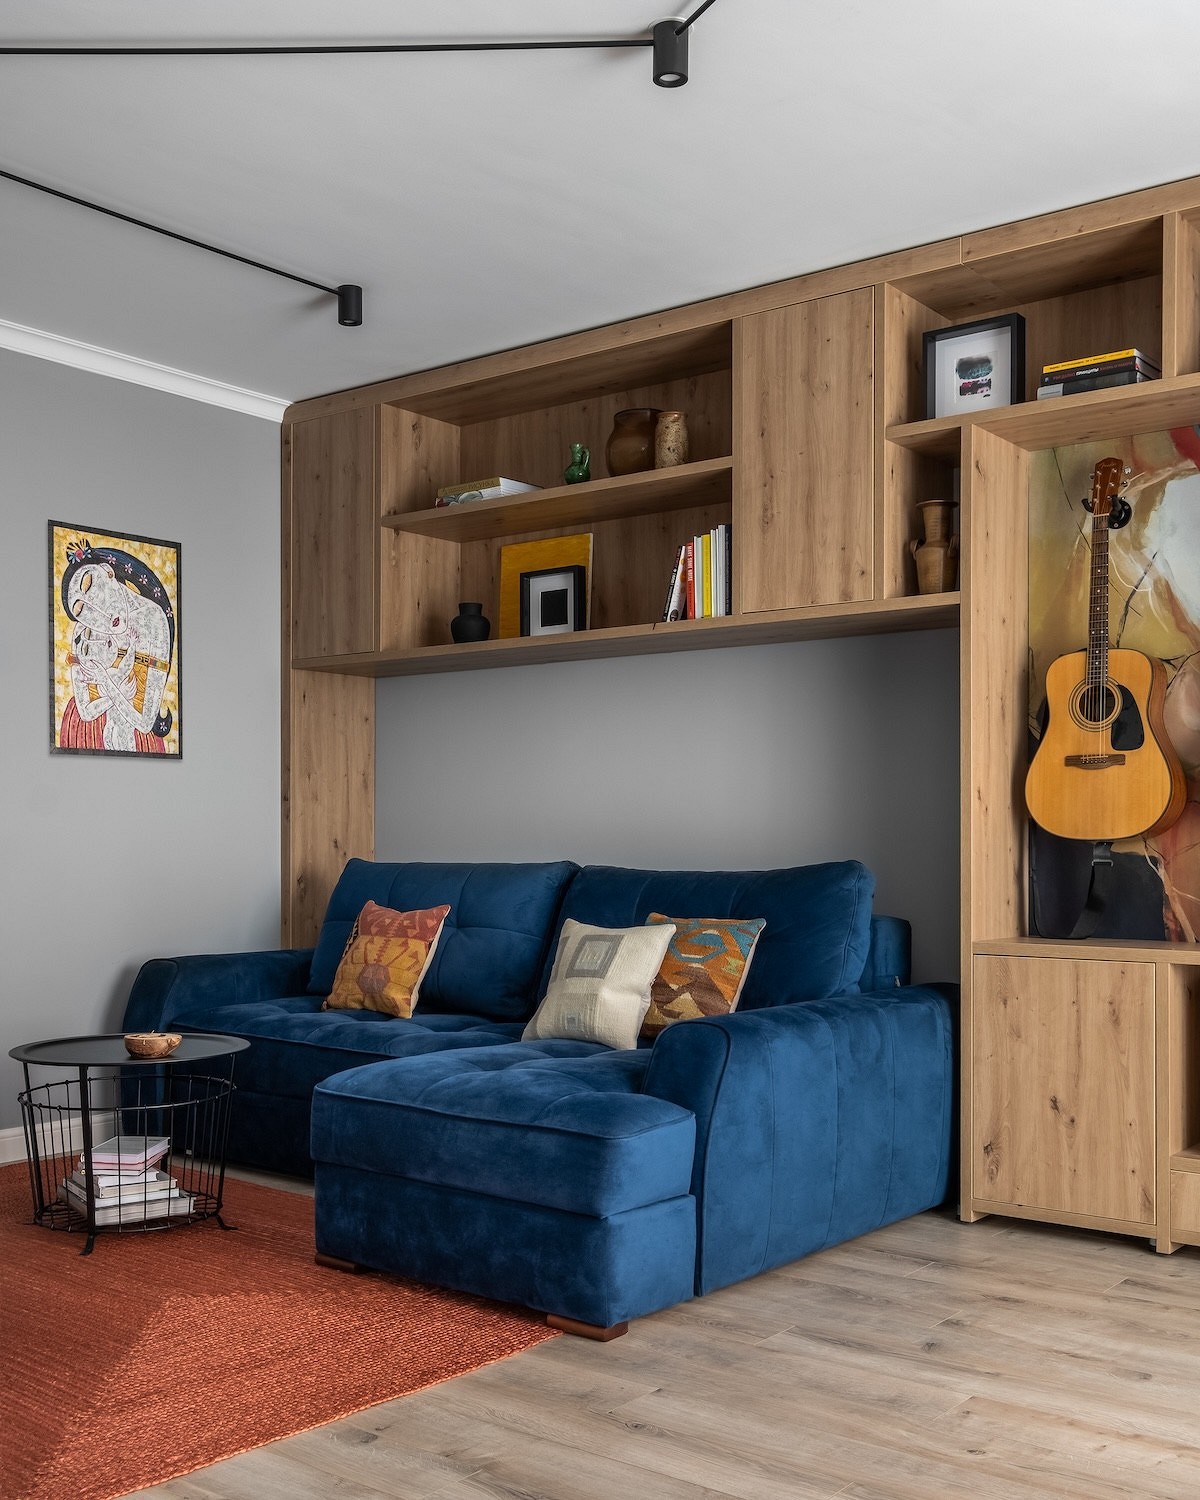 Как из типовой квартиры сделать стильную и уютную? Пример от дизайнера на площади 65 кв. м (фото до и после)14